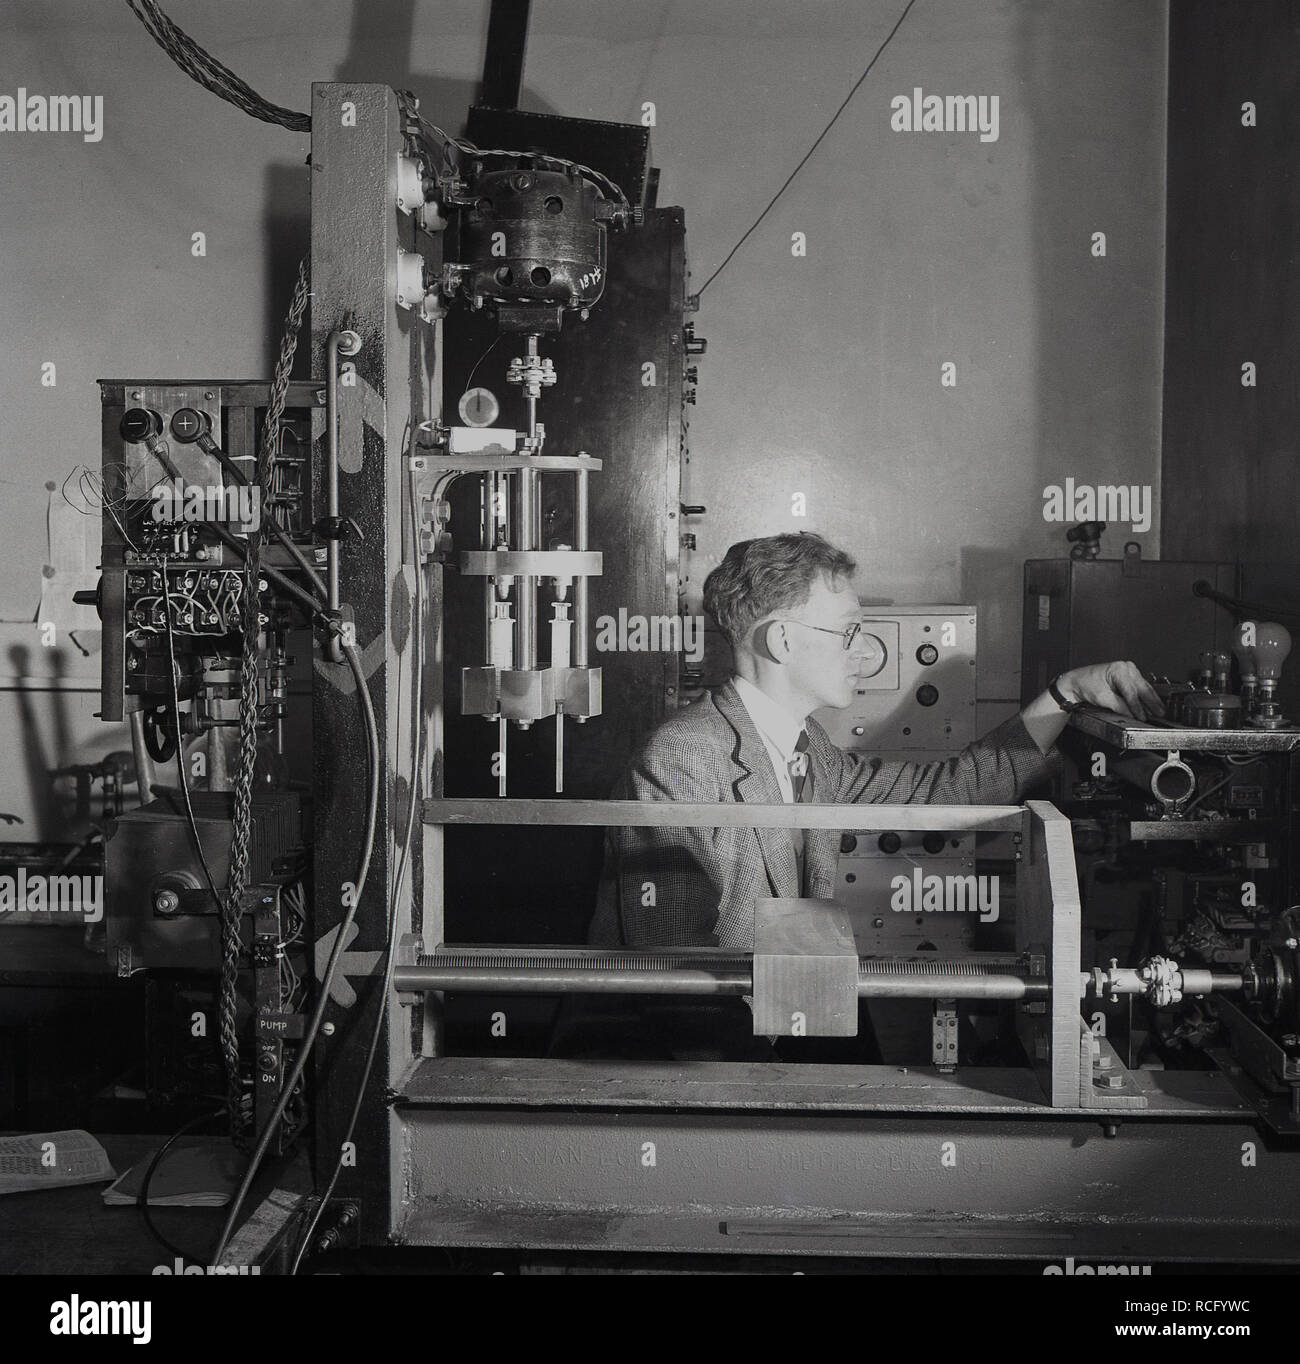 1950s, historique, chercheur scientifique dans un laboratoire entouré des équipements d'essai de l'époque, Leeds University, Leeds, Angleterre, Royaume-Uni. Banque D'Images